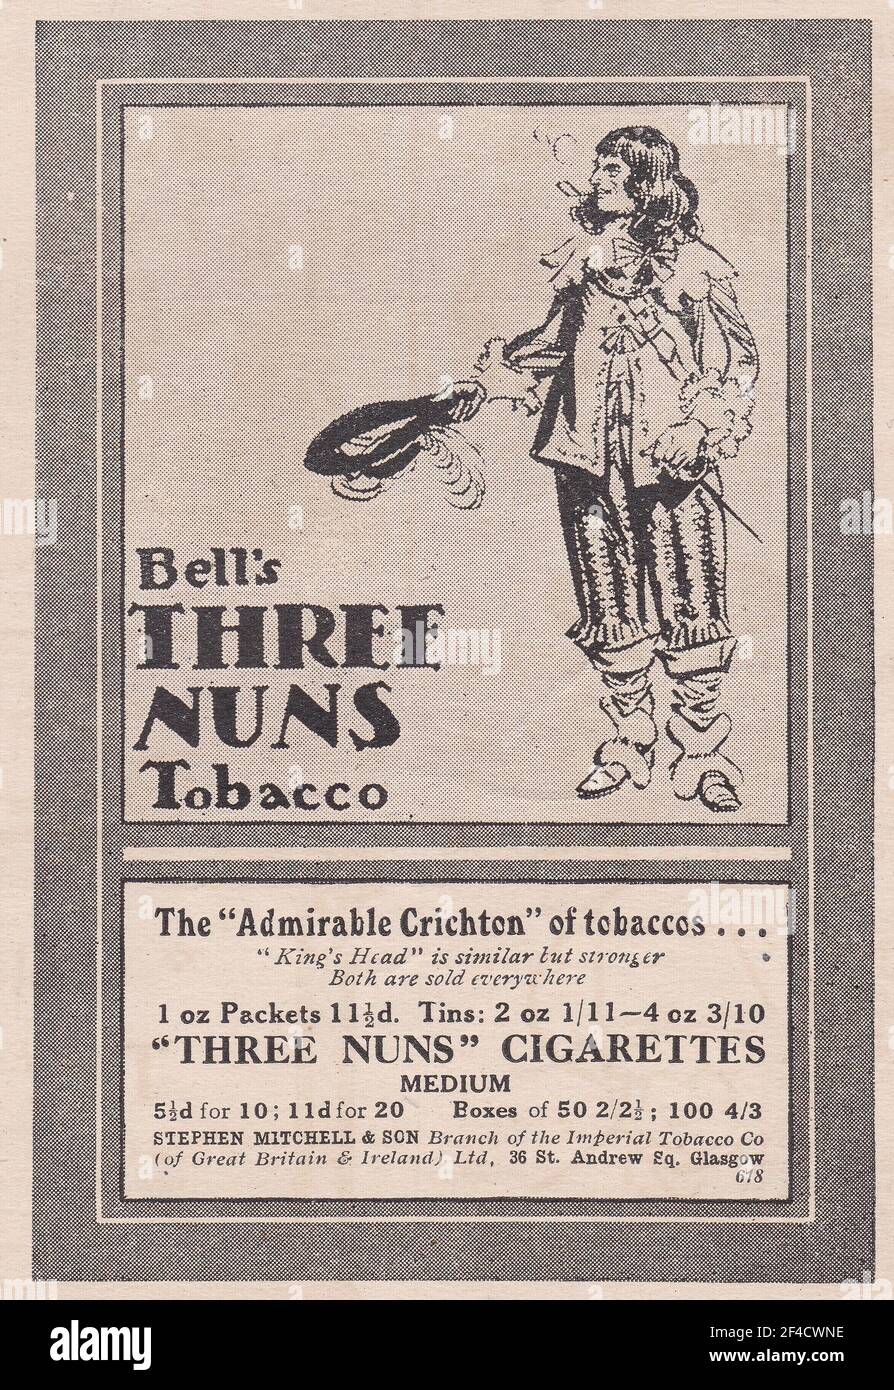 Anuncio vintage de los cigarrillos de tabaco de las tres Nun de Bell por Stephen Mitchell & son / Imperial Tobacco Co Foto de stock